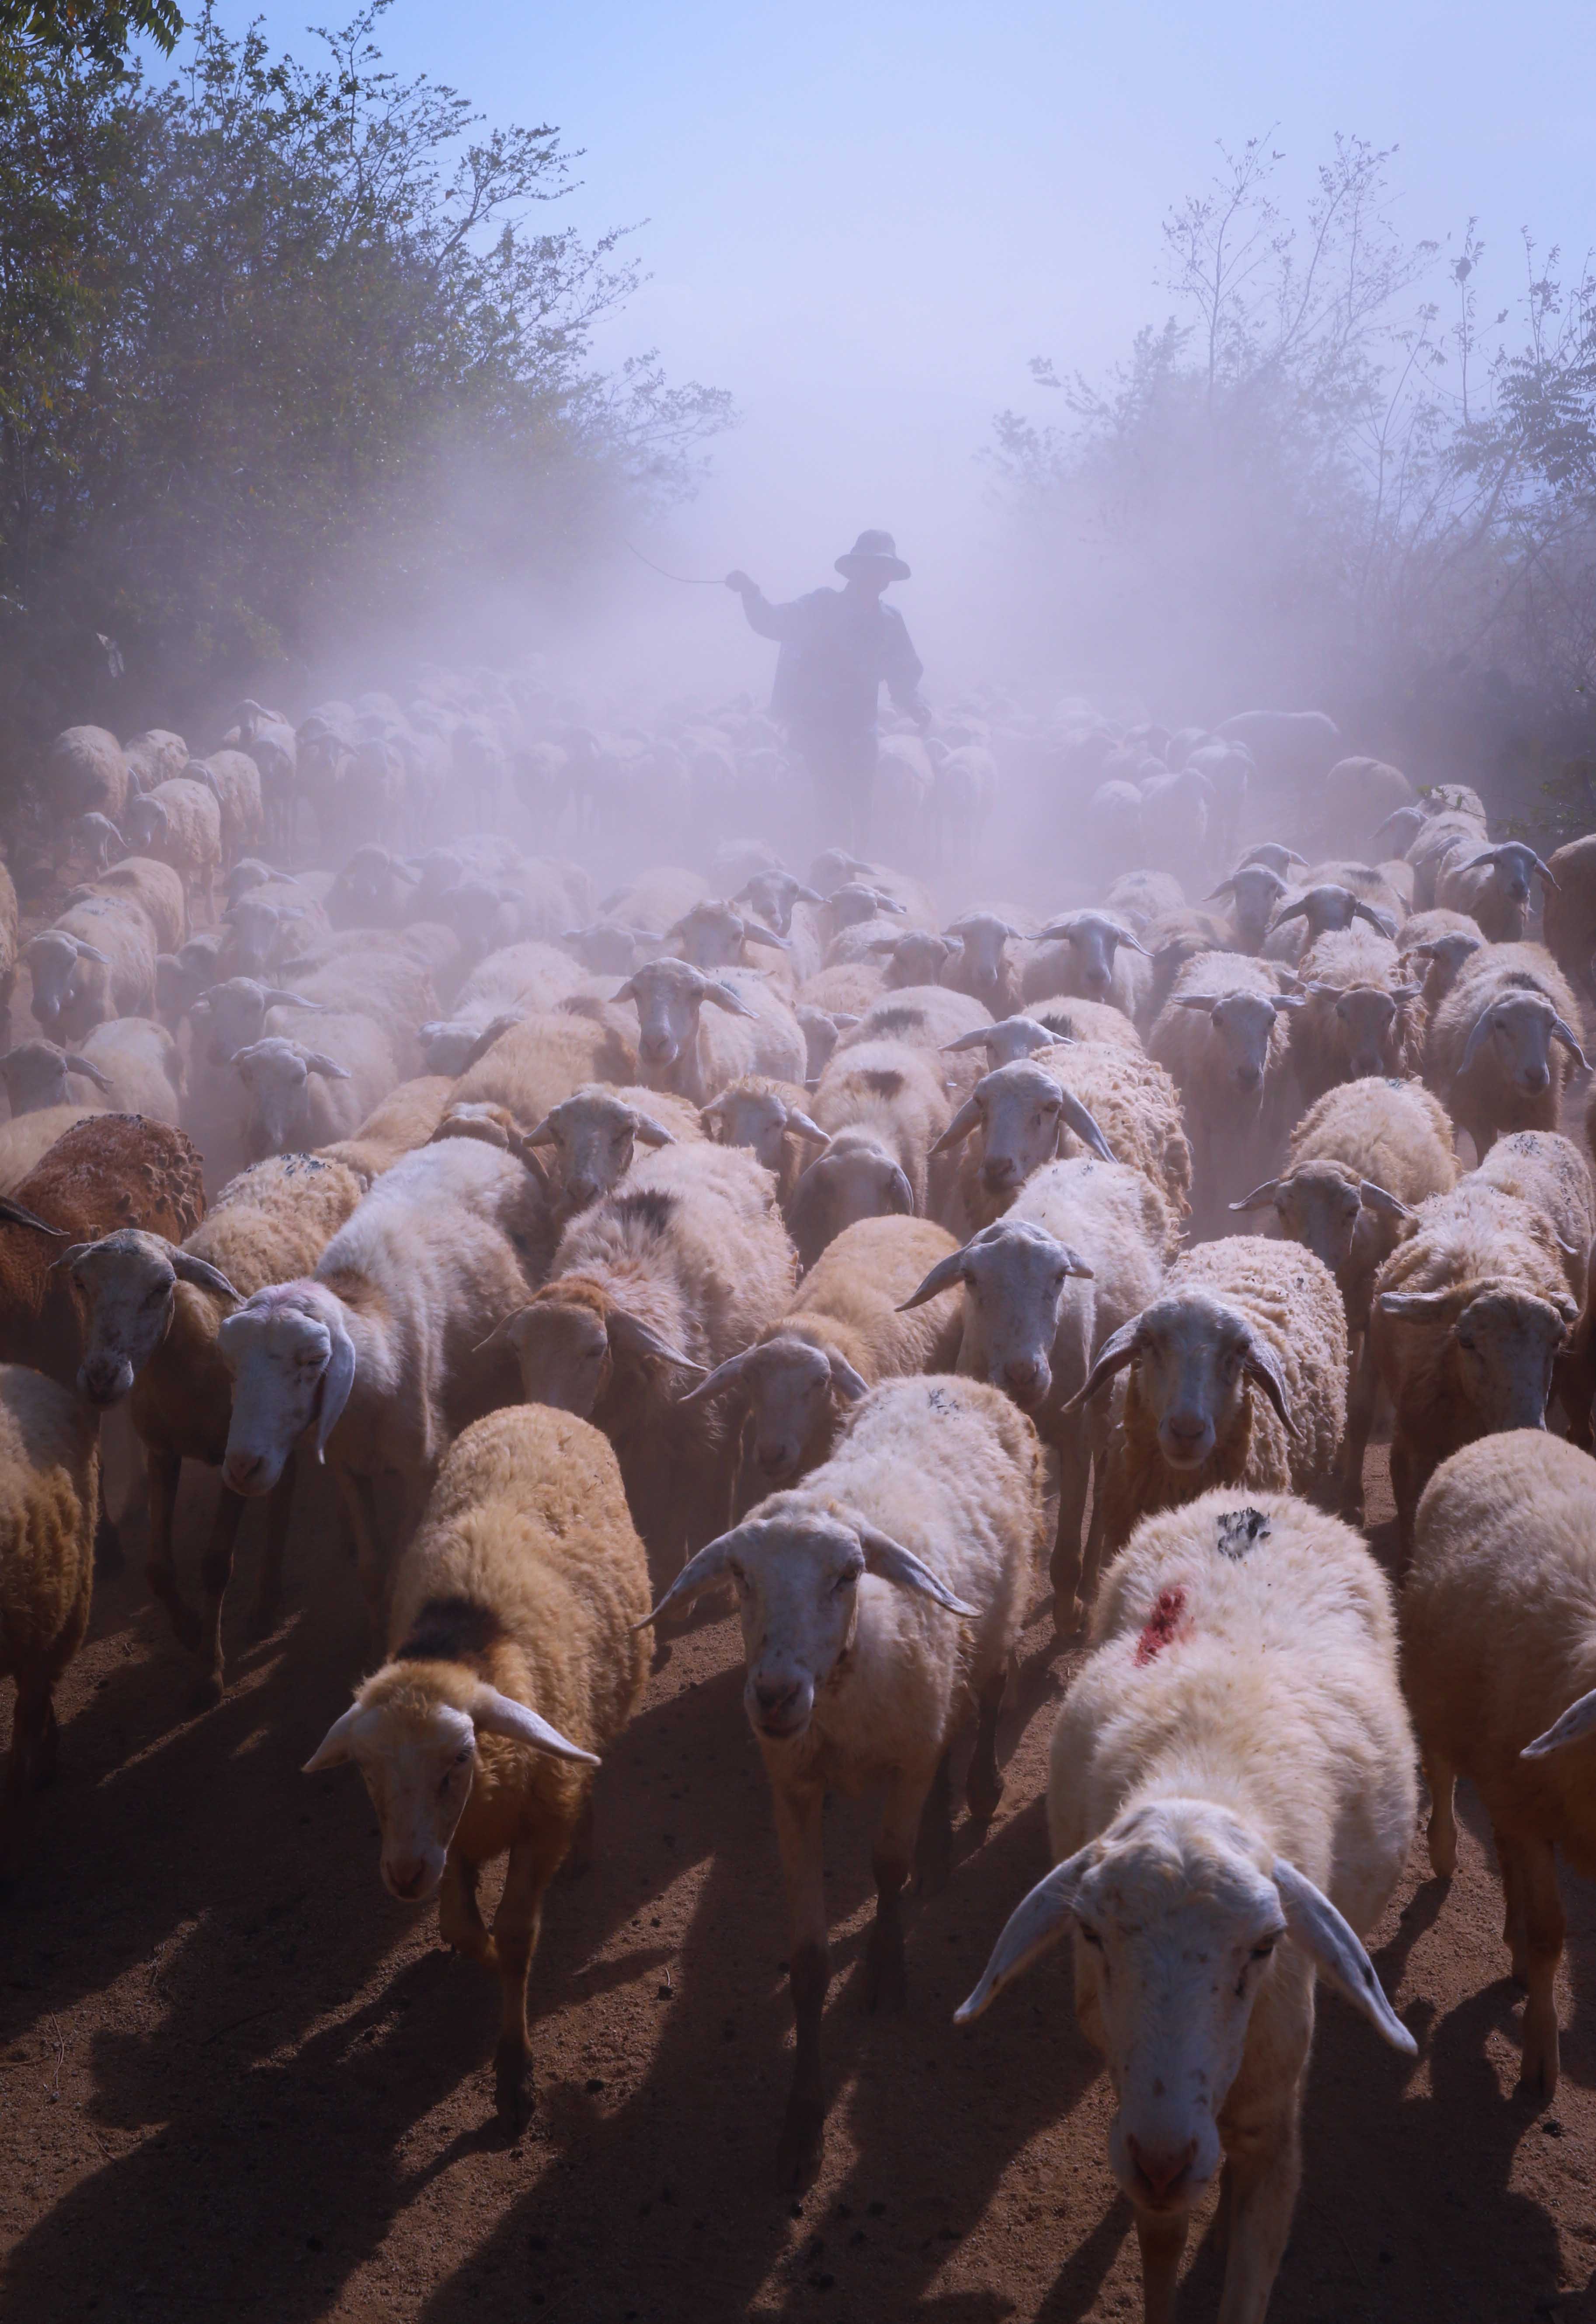 Sáng sớm trên những con đường làng dẫn ra đồng cừu An Hòa là cảnh tượng đàn cừu cả trăm con đồng loạt sổ lồng, sau một đêm dài say giấc. Hình ảnh mở đầu những thú vị cho một ngày khám phá, trải nghiệm ở đồng cừu An Hòa.